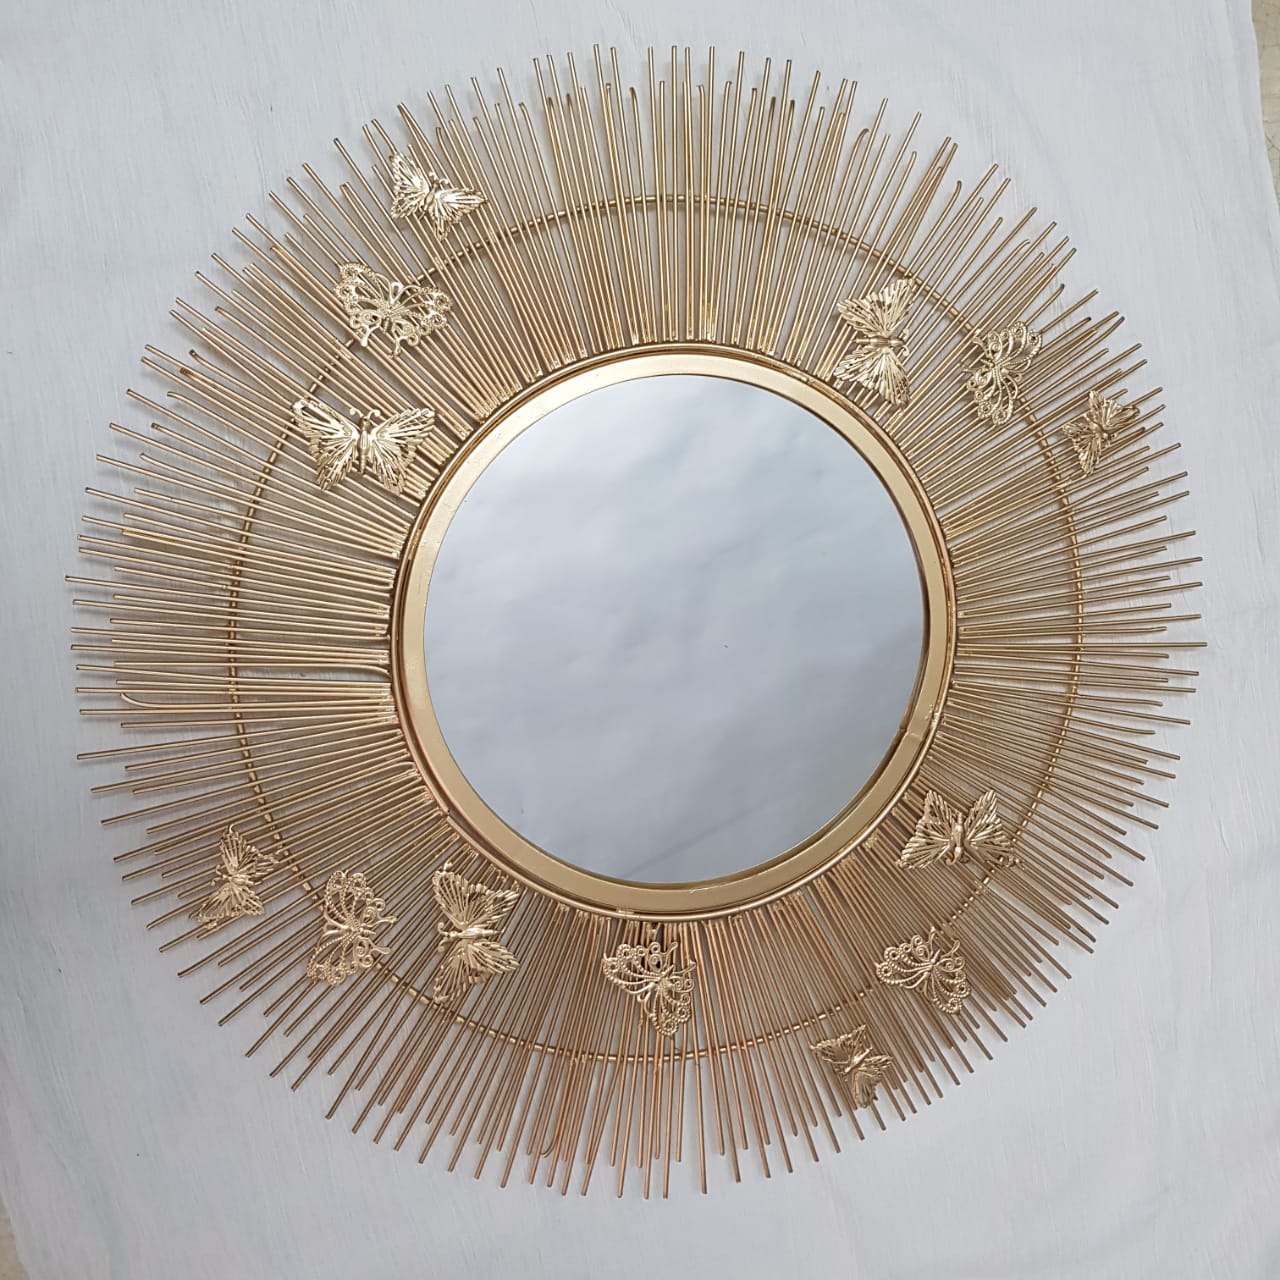 PC Home Decor | Unique Sun Rise Design Mirror, Gold